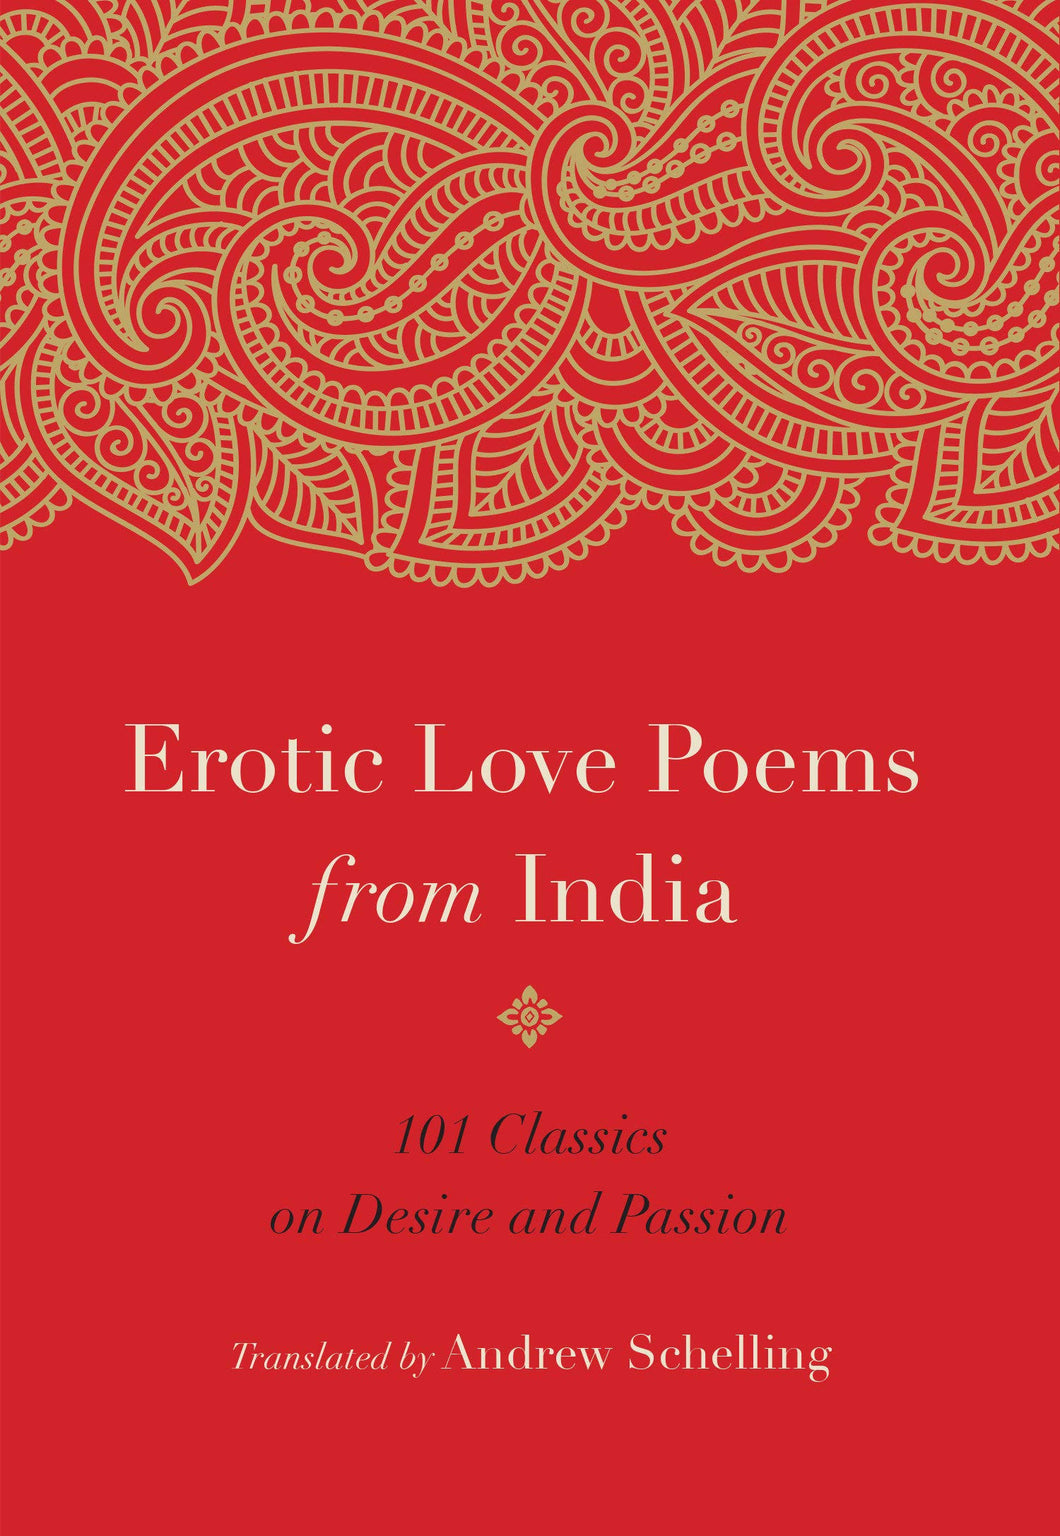 Erotic Love Poems from India : 101 Classics on Desire and Passion ร้านหนังสือและสิ่งของ เป็นร้านหนังสือภาษาอังกฤษหายาก และร้านกาแฟ หรือ บุ๊คคาเฟ่ ตั้งอยู่สุขุมวิท กรุงเทพ